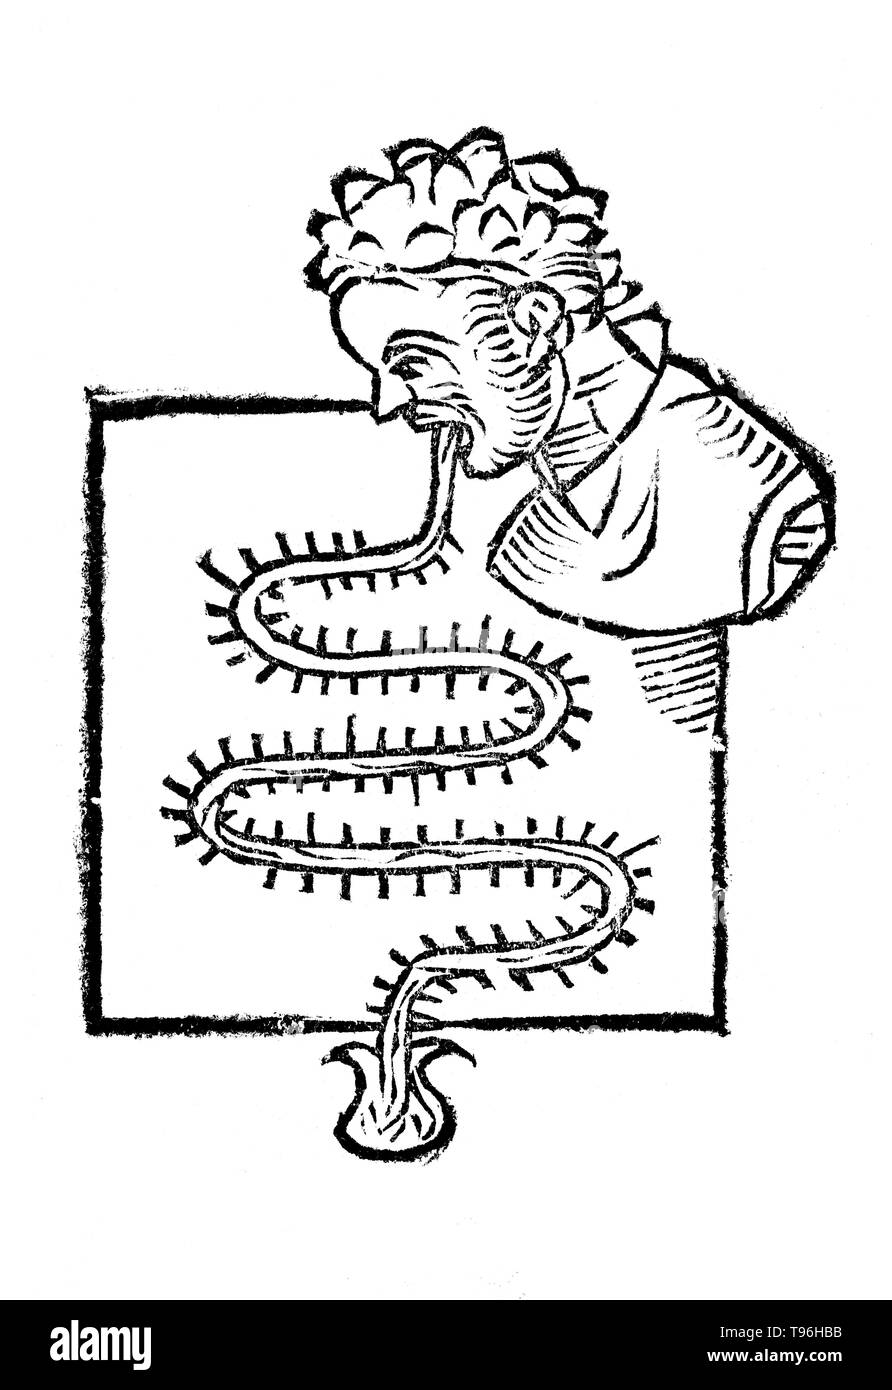 Instrumentum Primum. A Santorio Santorio (Marzo 29, 1561 - 22 febbraio 1636) era un fisiologo veneziano, medico e professore, che ha introdotto l'approccio quantitativo in medicina. Egli è noto anche come inventore di molti dispositivi medici. Il suo lavoro De Statica Medicina, scritto nel 1614, ha visto molte pubblicazioni e influenzato generazioni di medici. Santorio ha introdotto il termoscopio nel lavoro intitolato Sanctorii Sanctorii Commentaria in Artem medicinalem Galeni nel 1612. Foto Stock